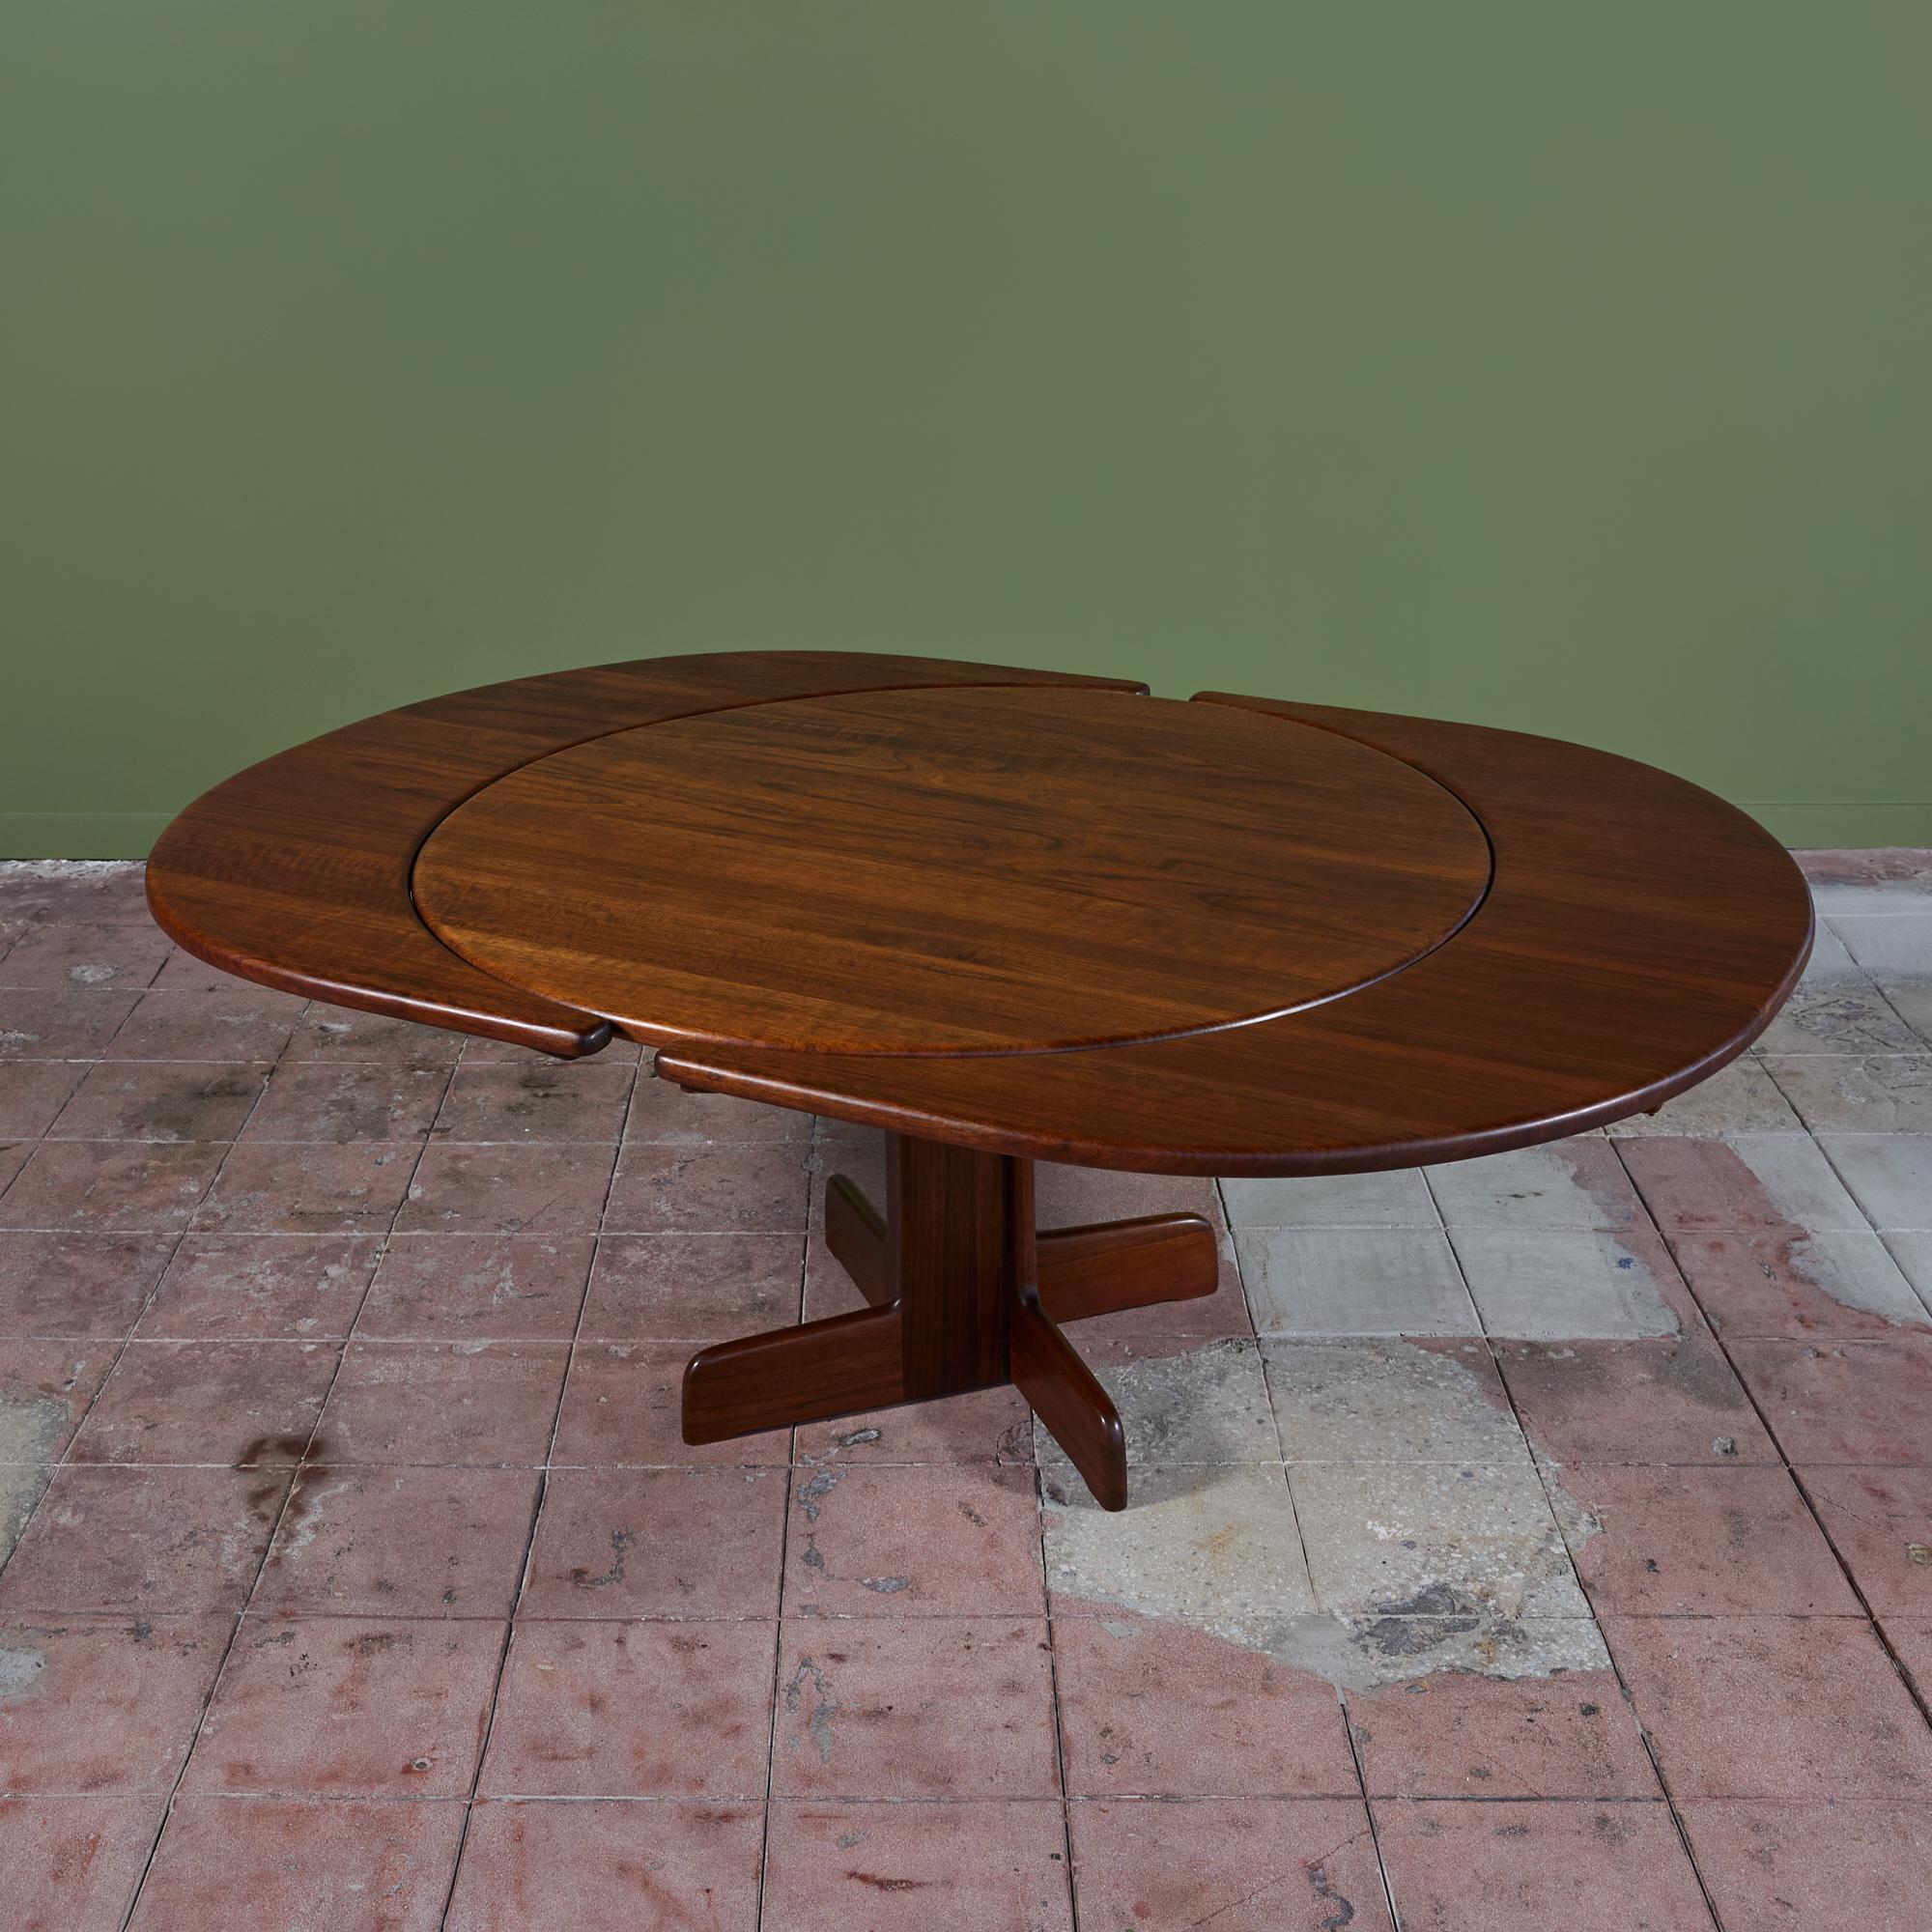 Amerikanischer Esstisch, ca. 1970er Jahre, von Gerald McCabe. Der Tisch hat eine runde Platte, die auf einem Sockel aus massivem Shedua ruht. Der Tisch wird mit zwei halbmondförmigen Blättern geliefert, die an den Außenseiten des Tisches befestigt